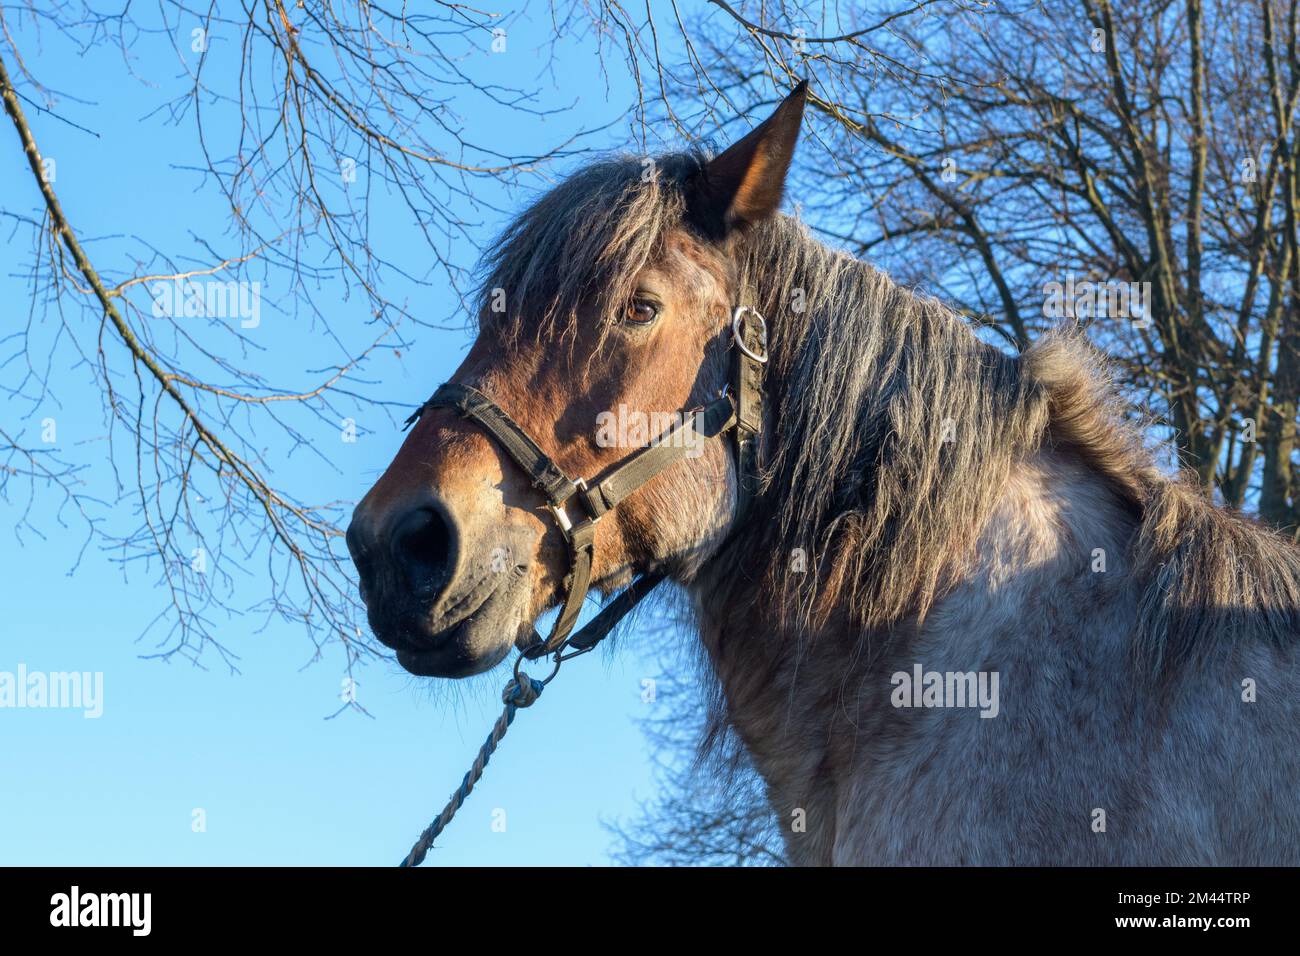 Retrato de caballo marrón doméstico contra el fondo del cielo de invierno y las ramas de los árboles Foto de stock